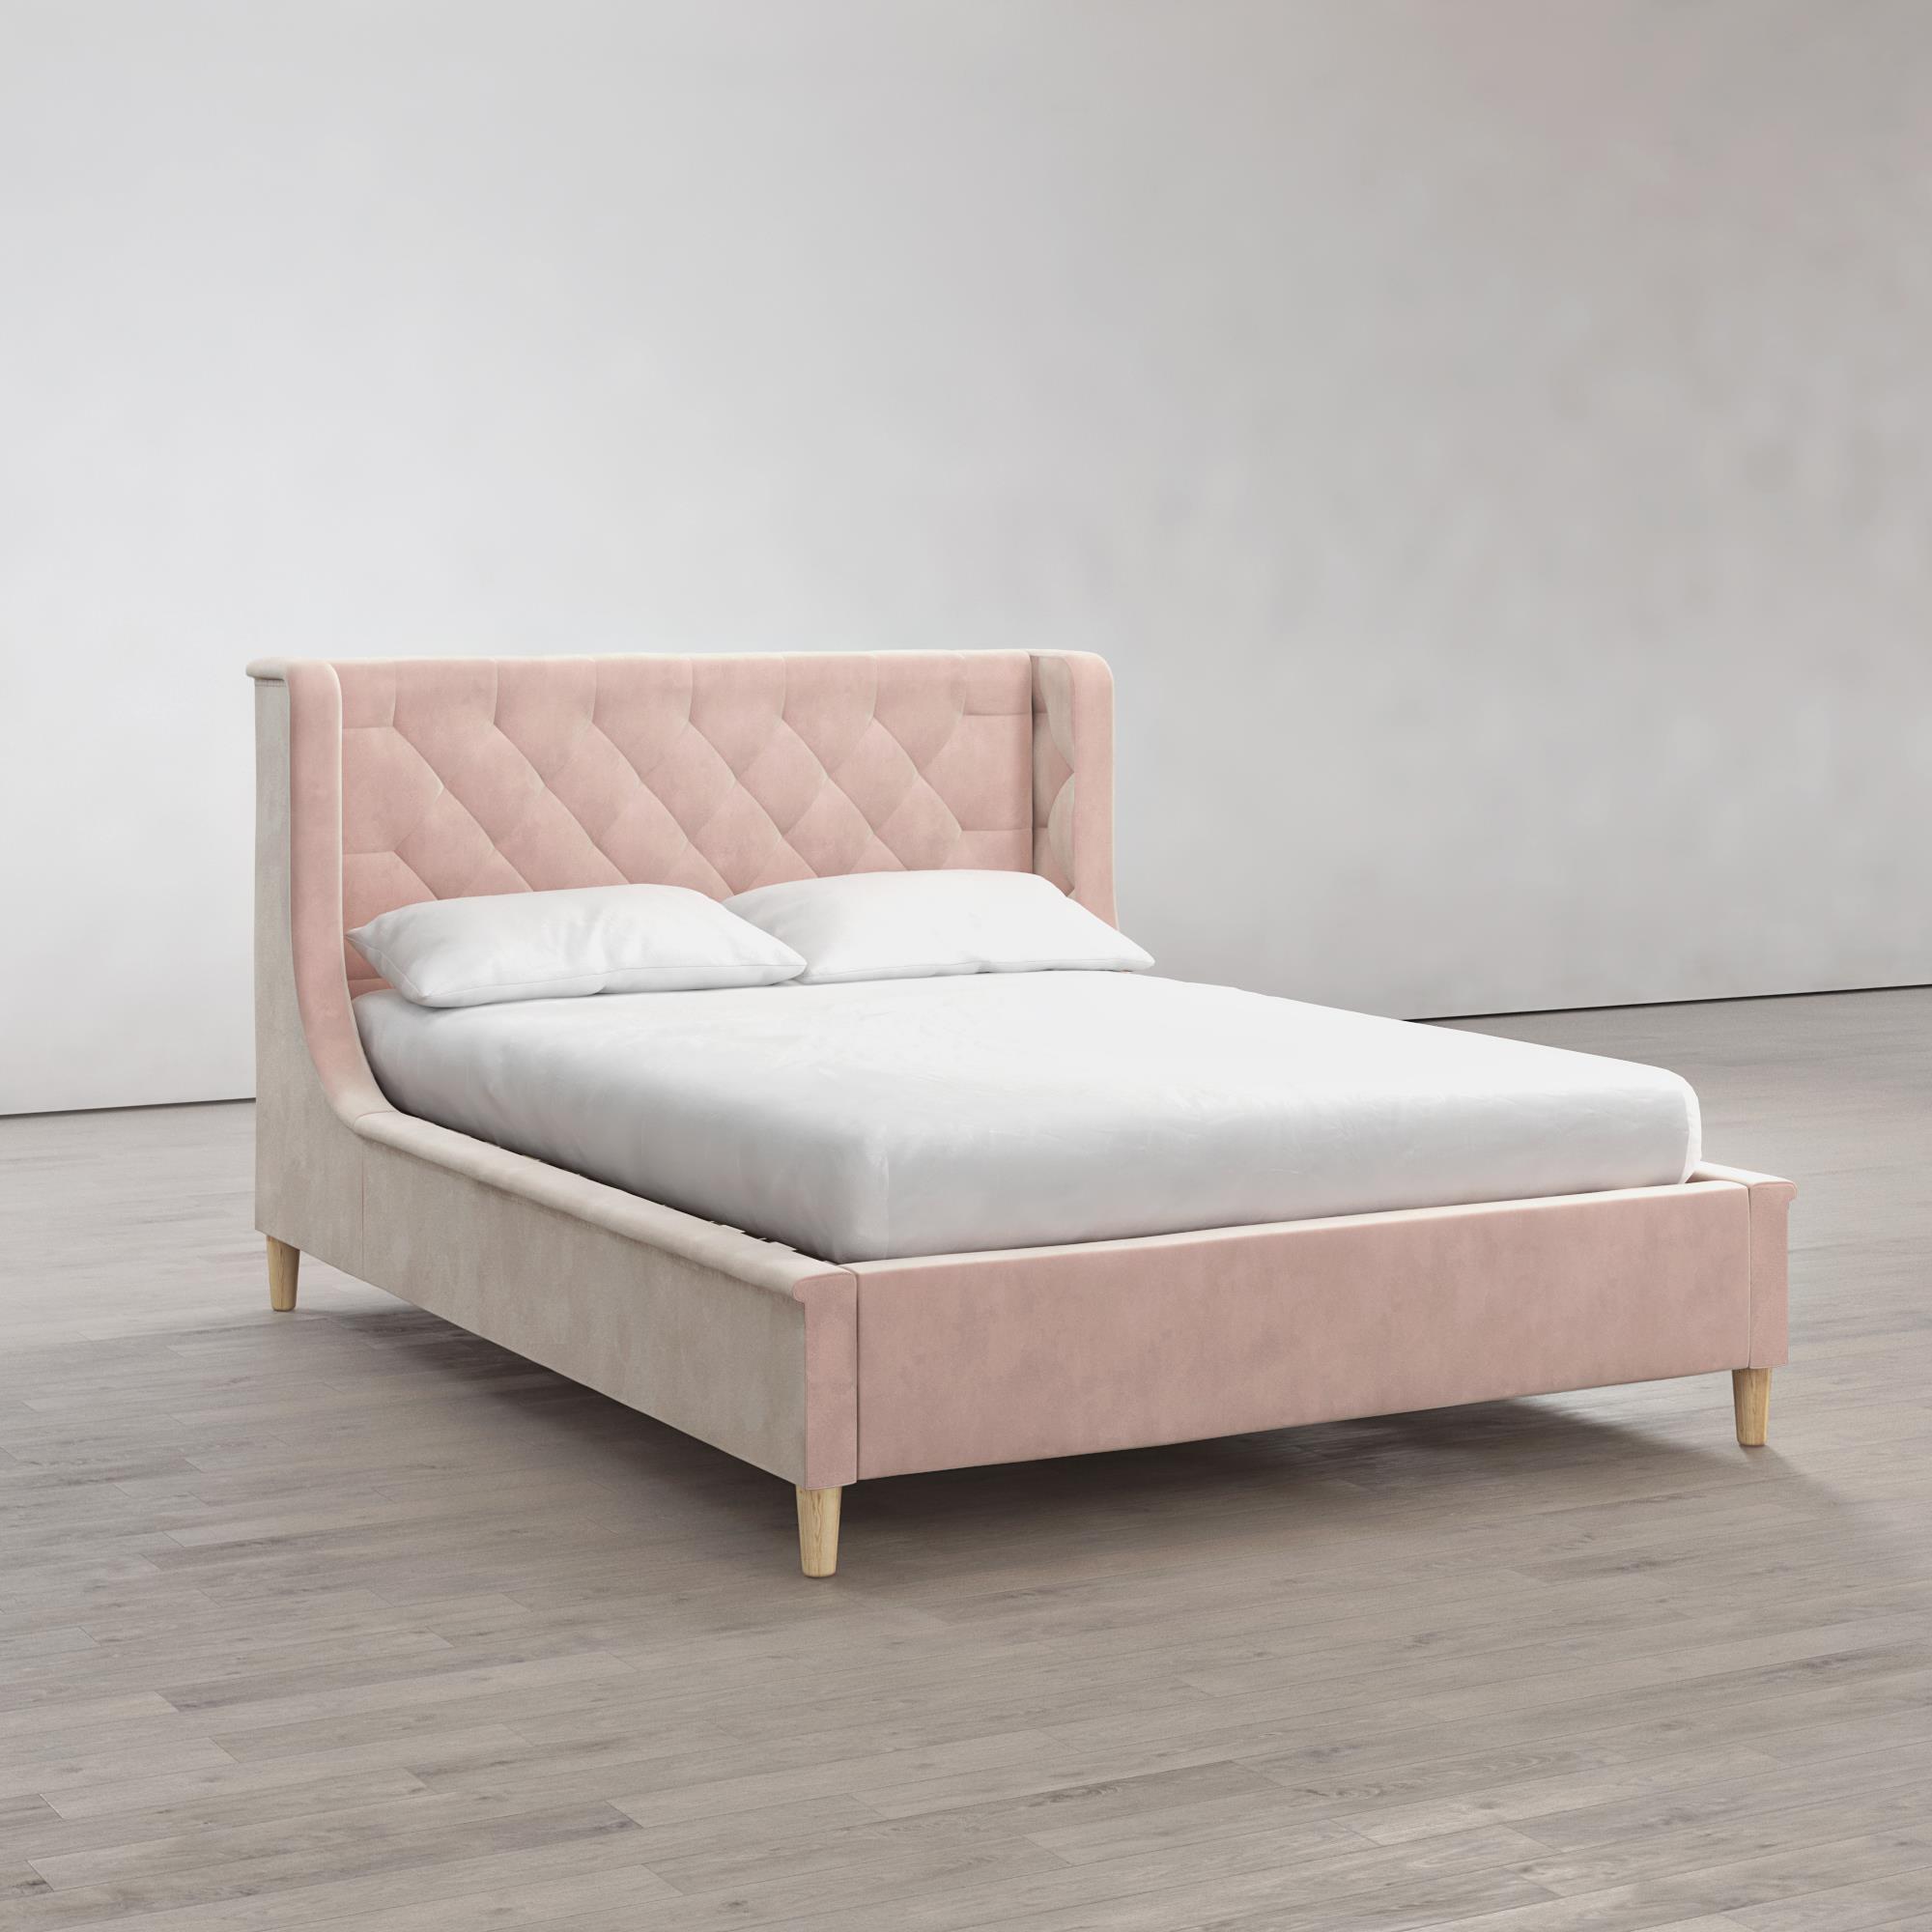 Little Seeds Monarch Hill Ambrosia Kids' Full Upholstered Bed, Pink Velvet - image 3 of 17